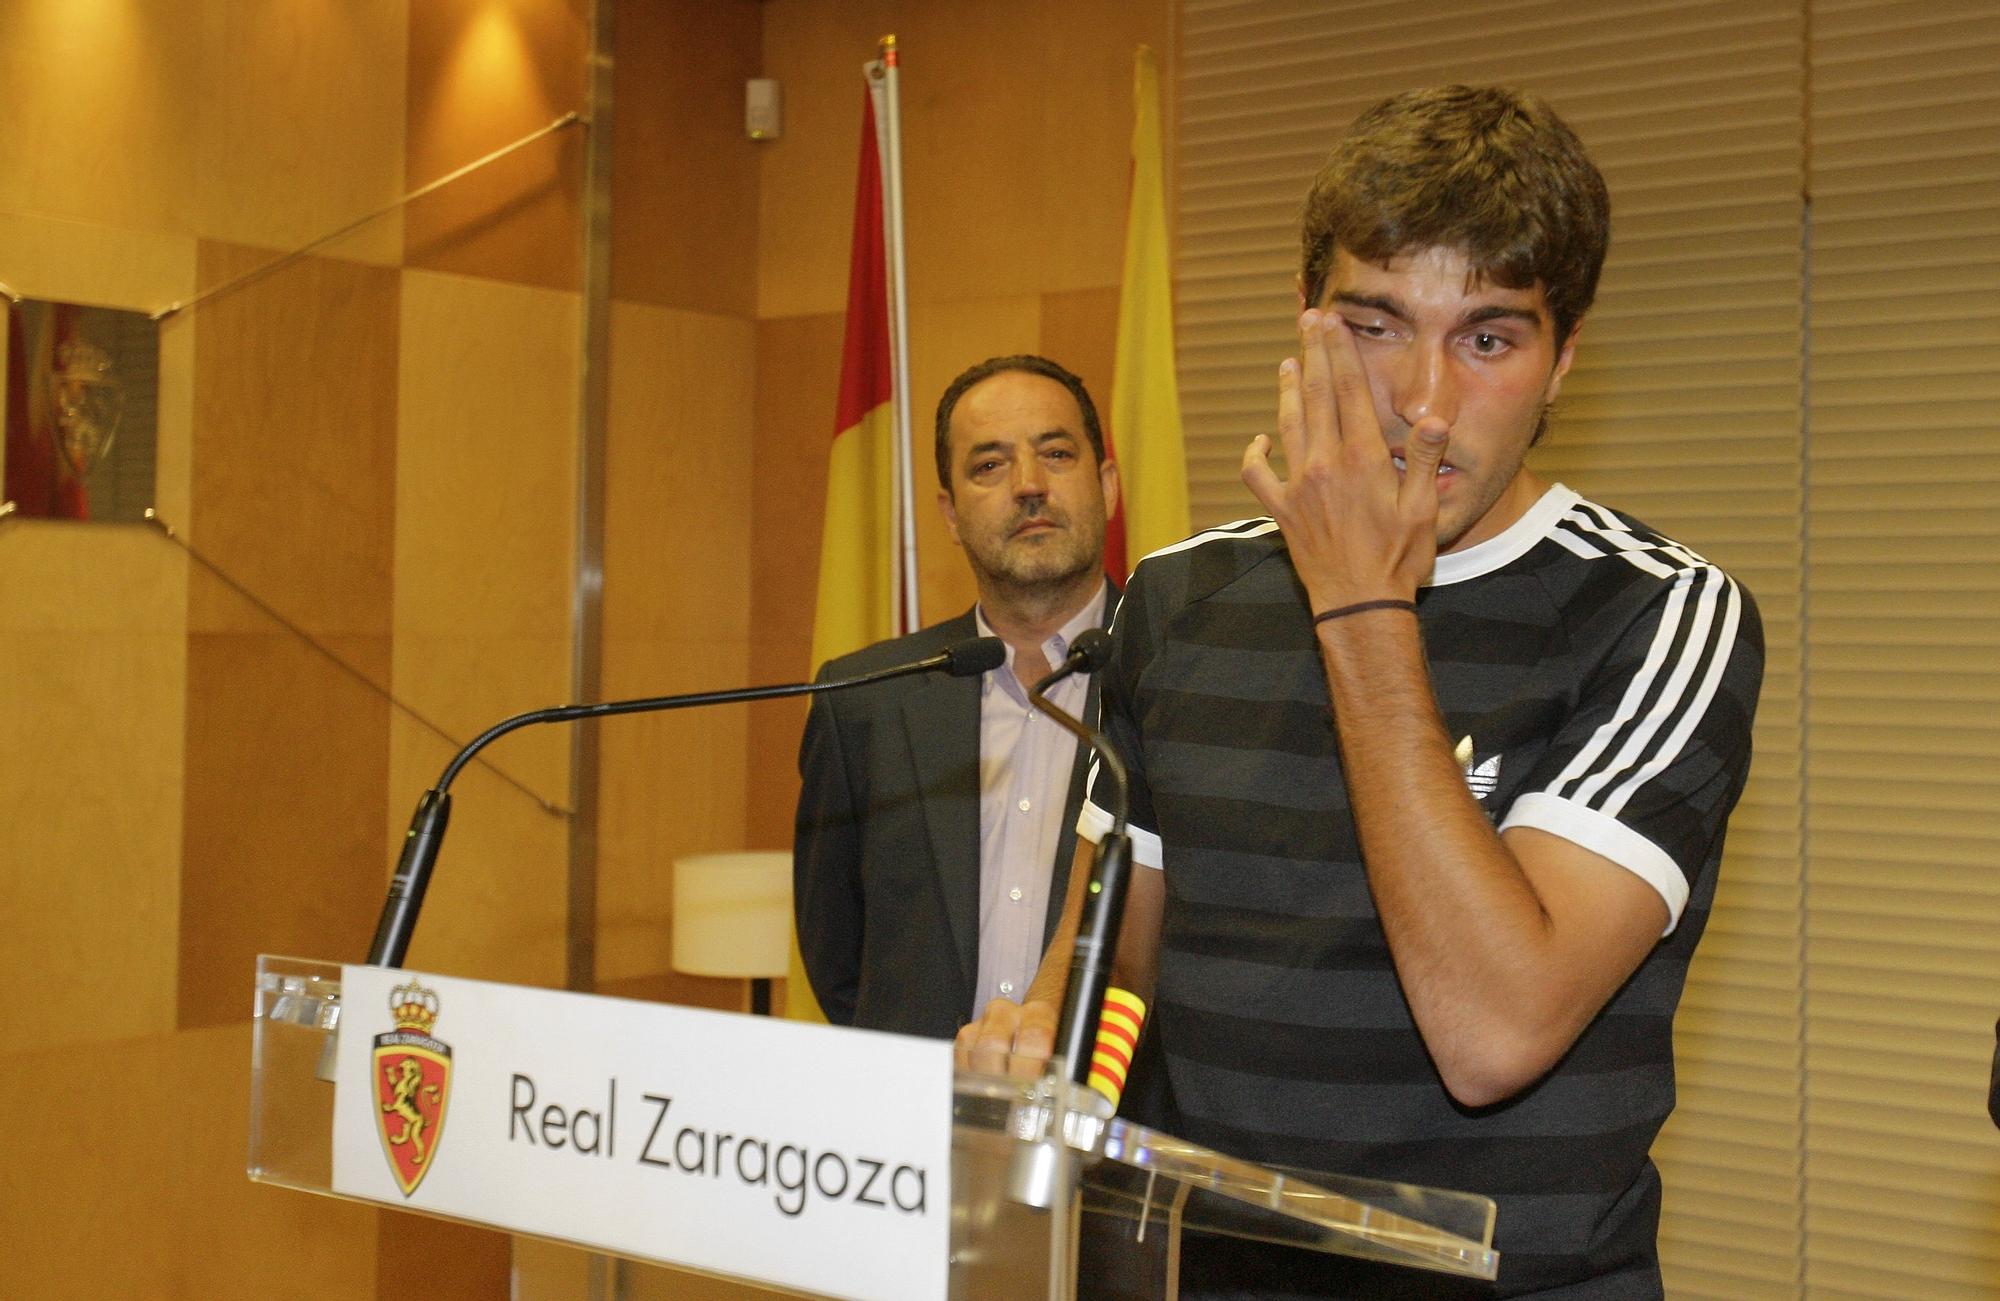 Los mejores momentos de Alberto Zapater durante su carrera en el Real Zaragoza